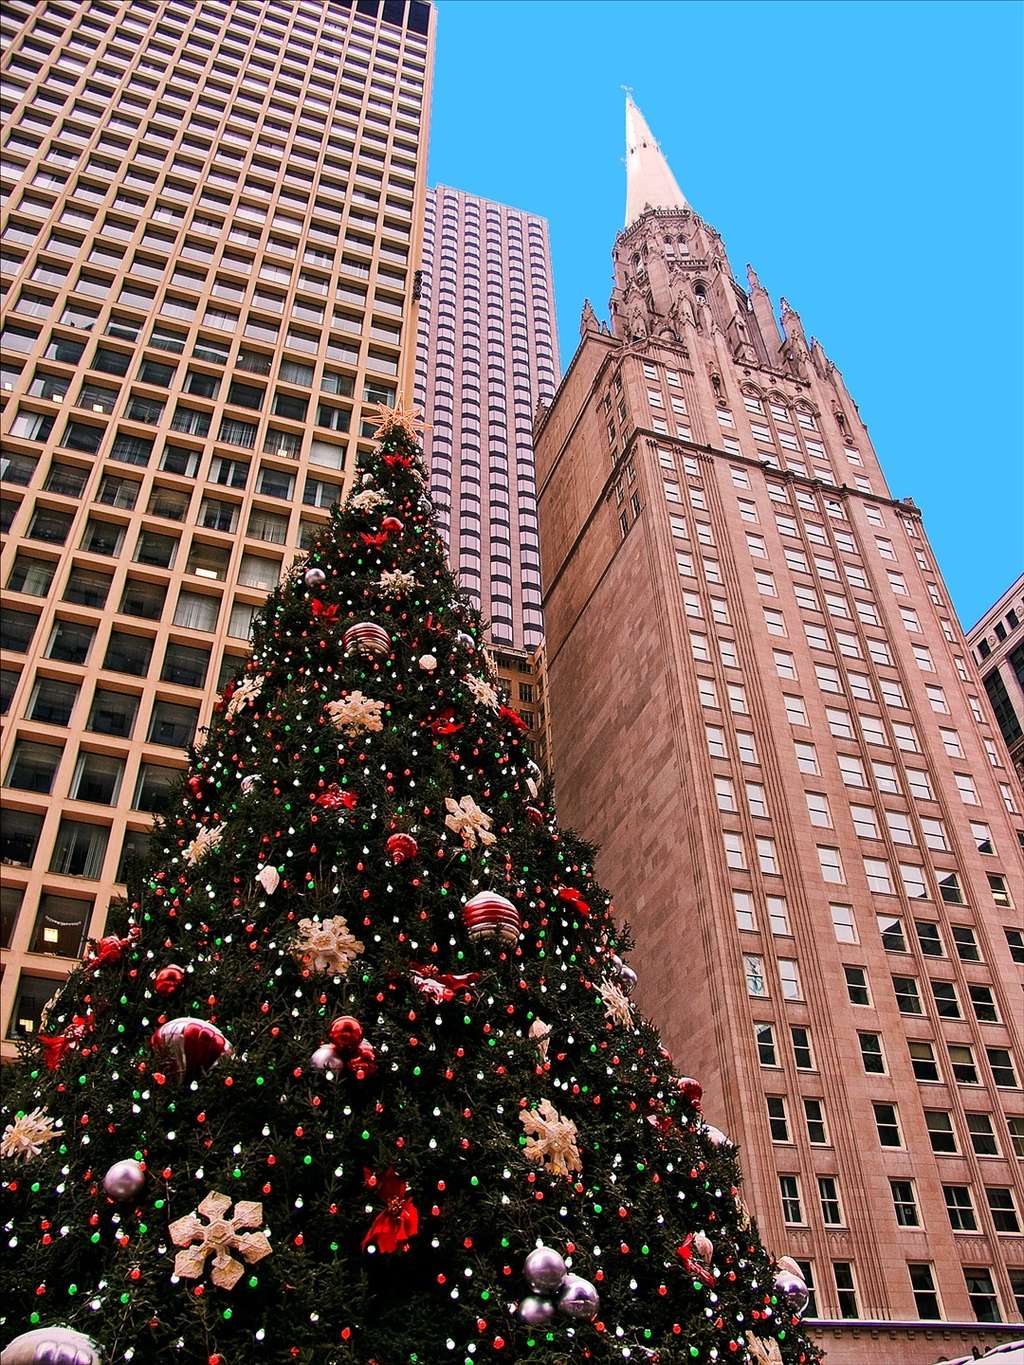 Le sapin de Nordmann est souvent utilisé en tant qu'arbre de Noël. © Fotophilius, Flickr by nc-sa 3.0 